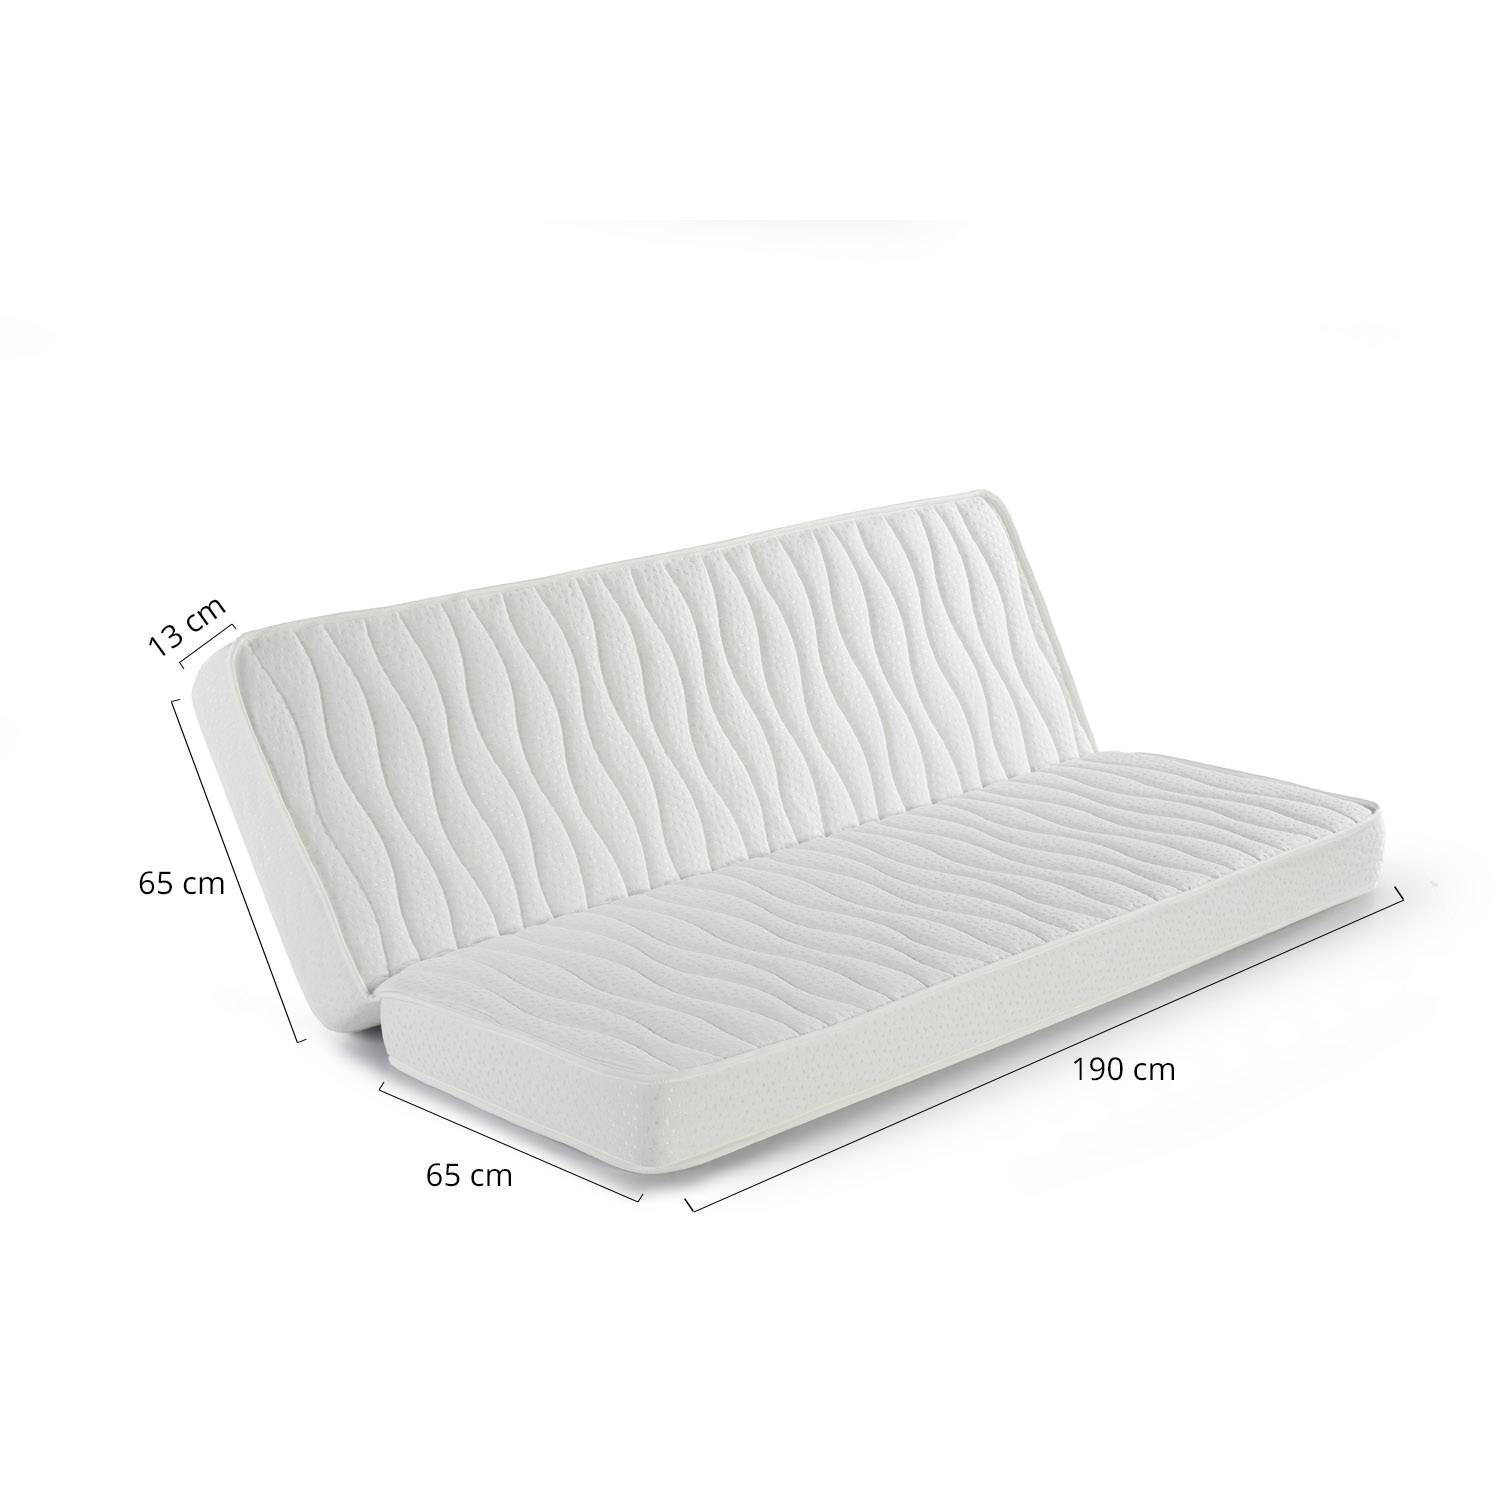 Colchones para sofá cama - IKEA